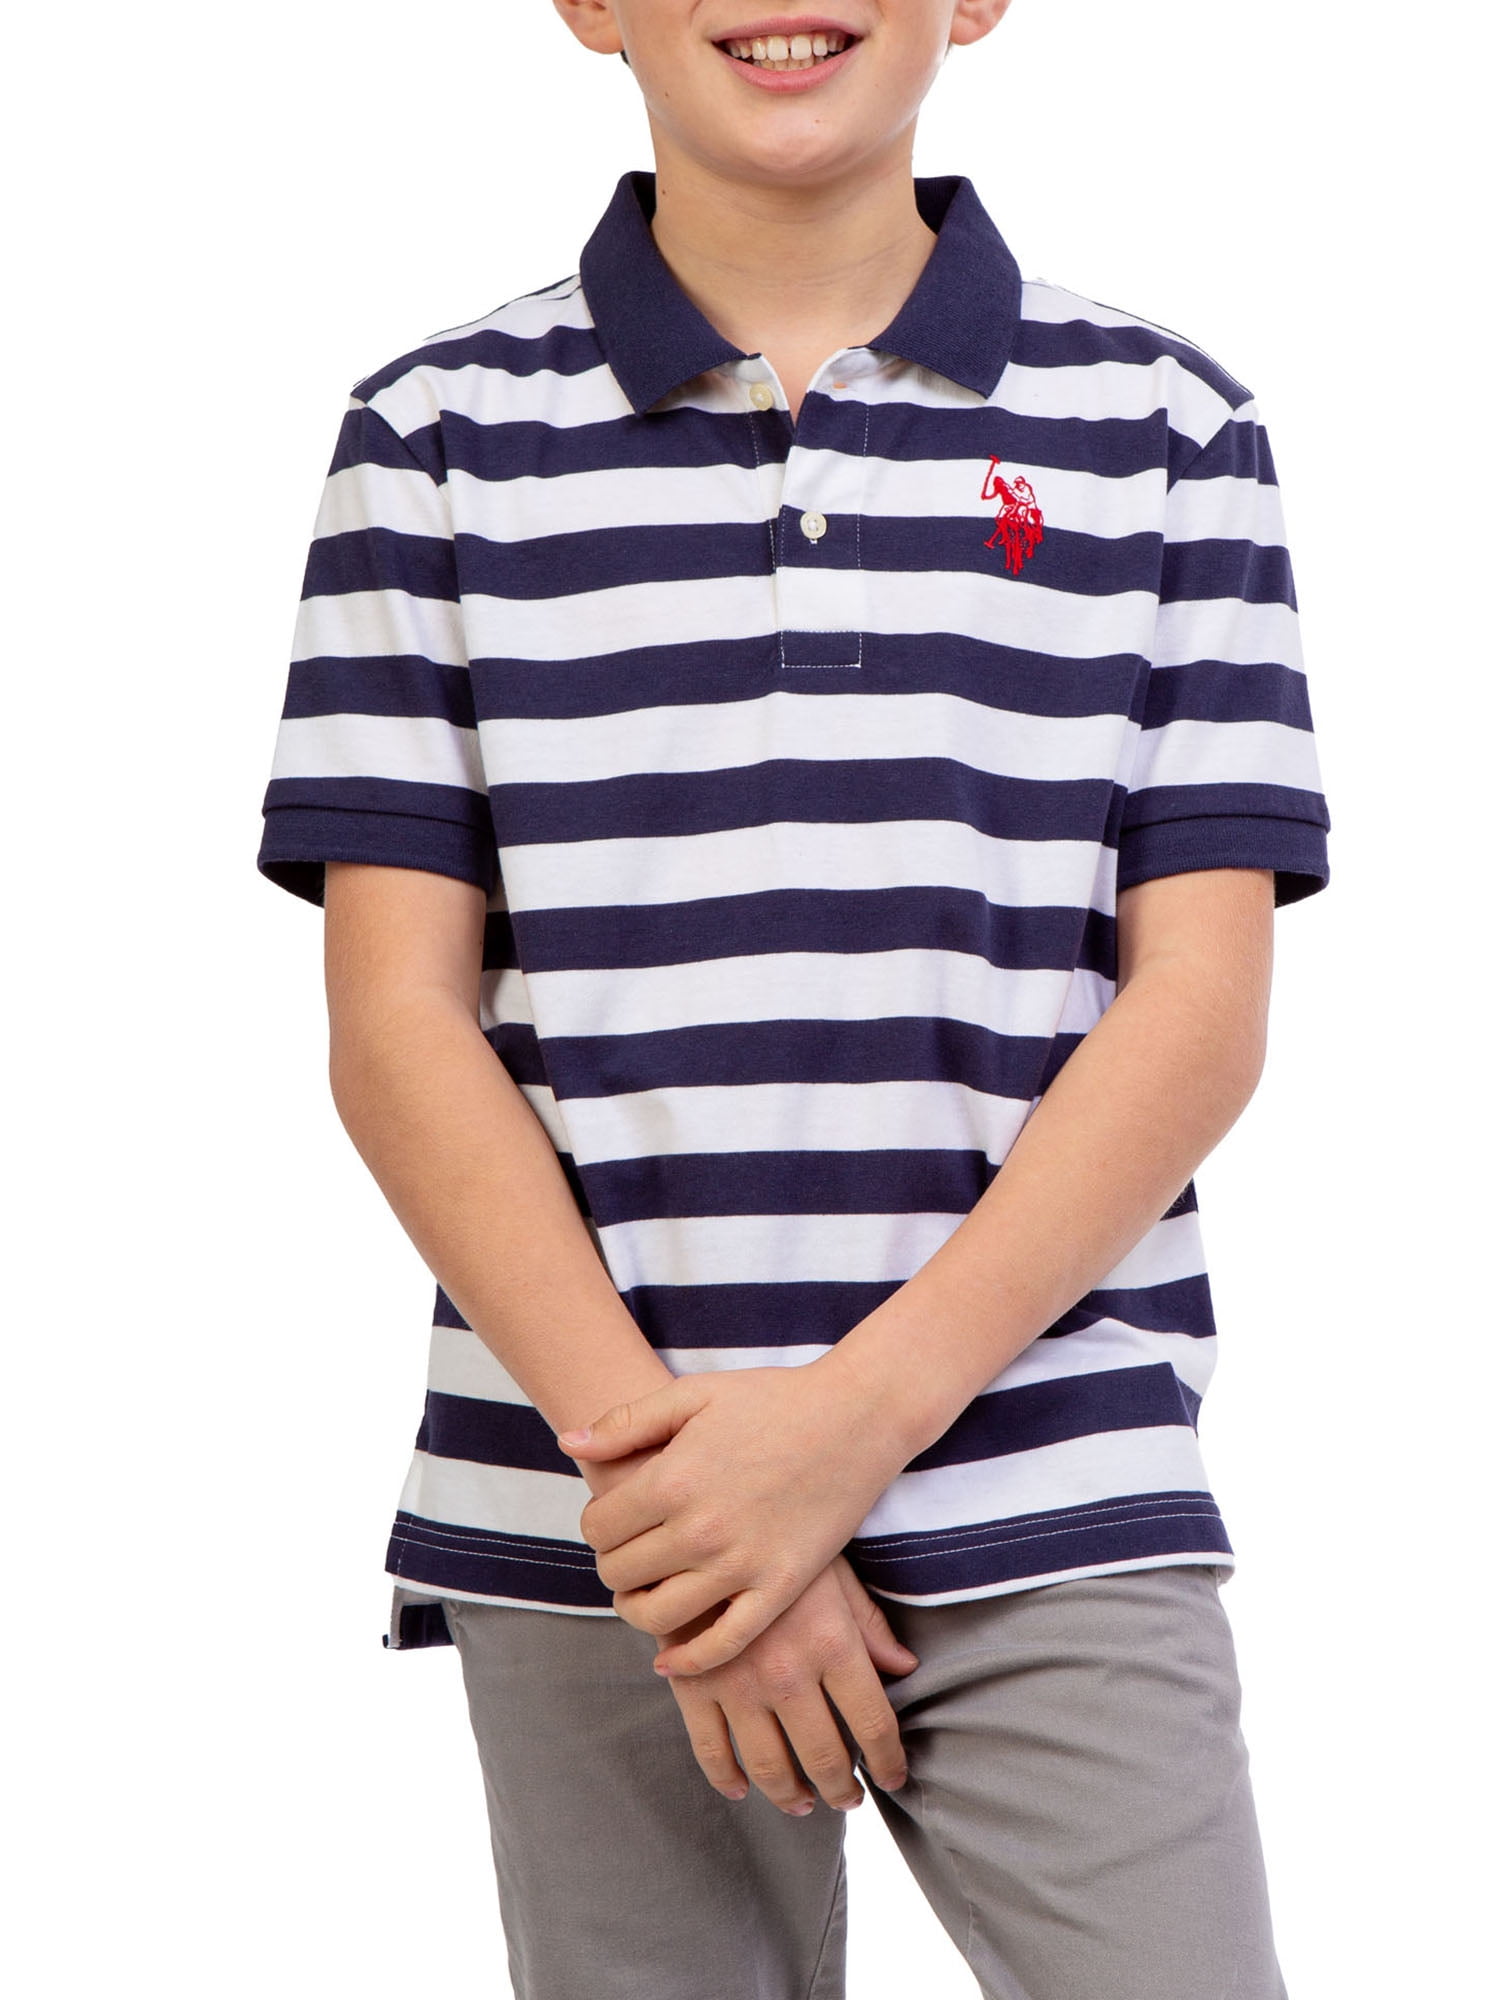 Boys Short Sleeve Woven Shirt U.S Polo Assn 2 Pack 